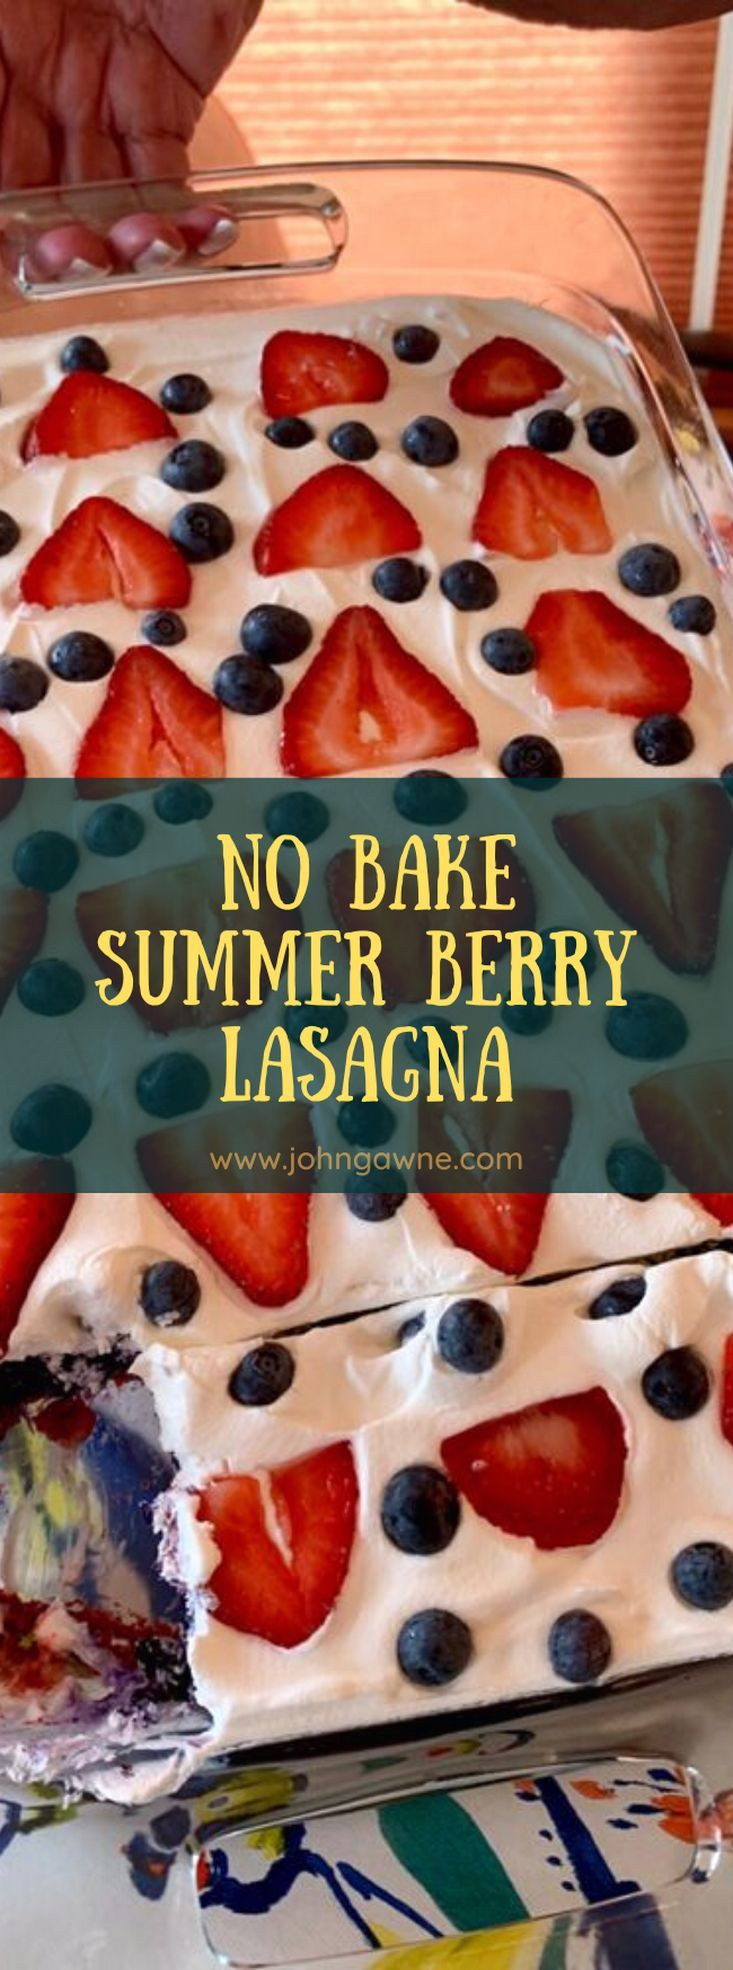 No Bake Summer Berry Lasagna
 No Bake Summer Berry Lasagna in 2020